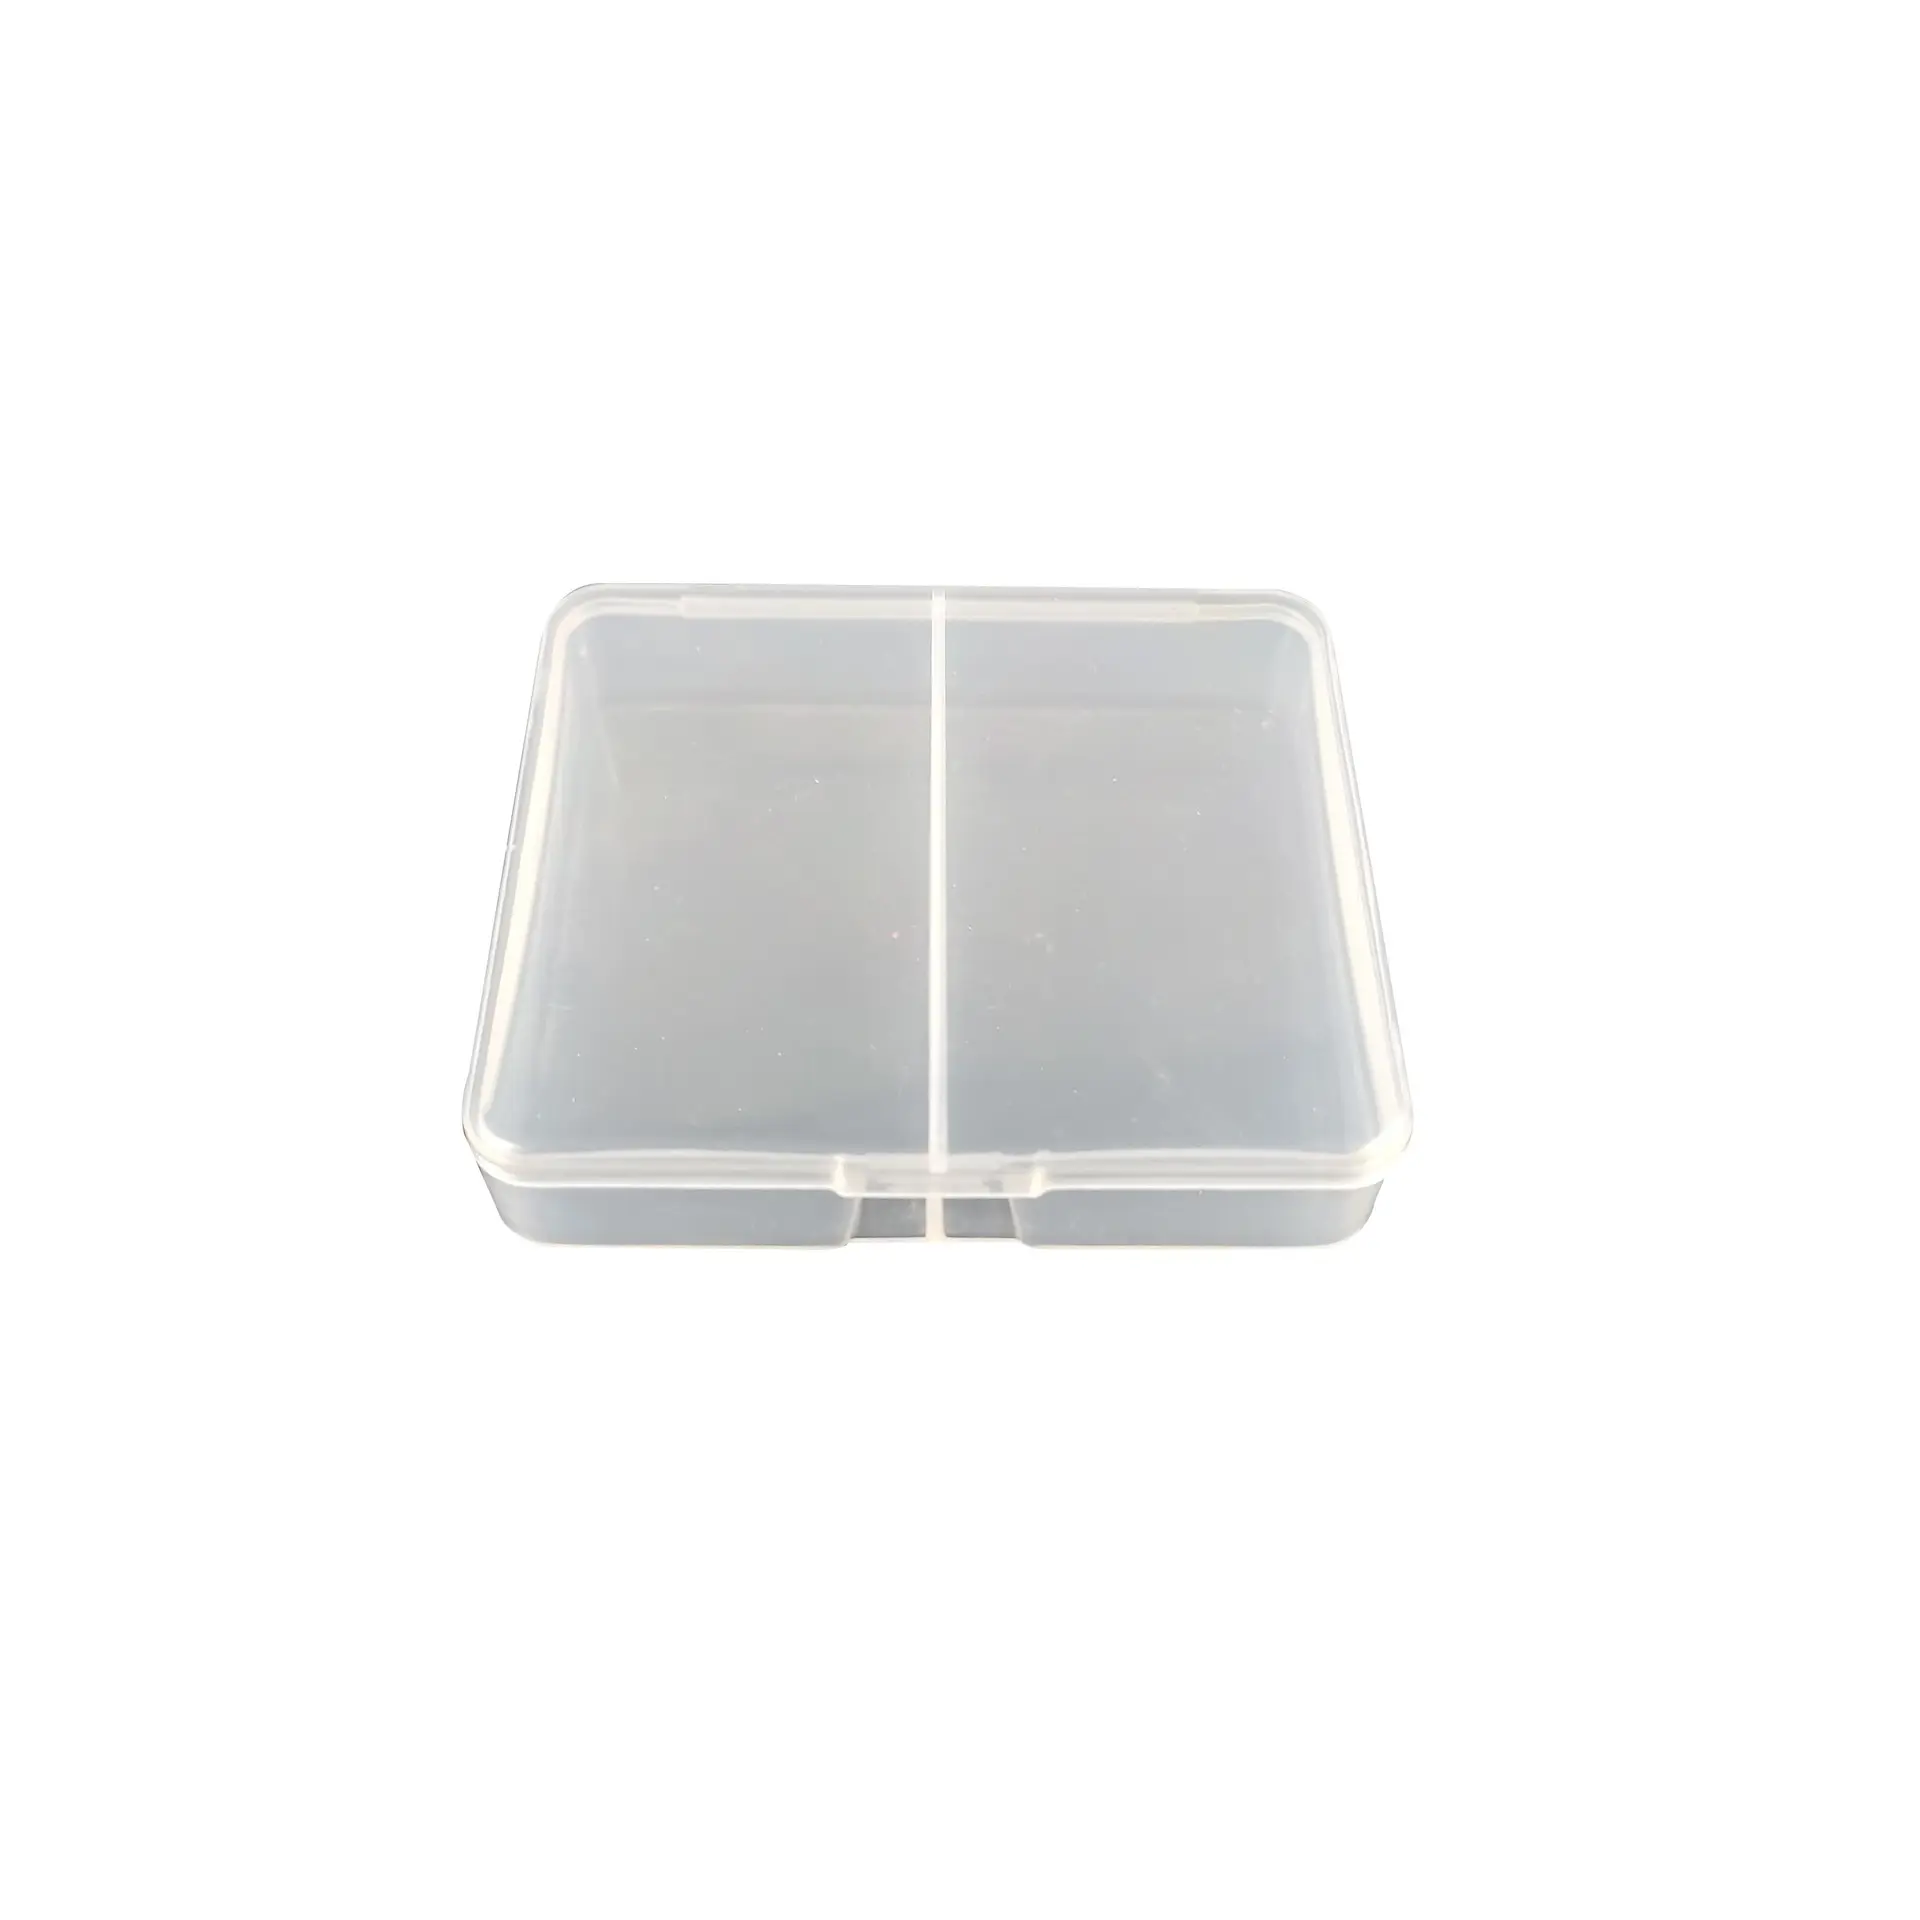 2コンパートメント実用的なツールボックスツール用プラスチック収納ボックススクリューソーイング透明コンポーネントスクリュージュエリー収納ボックス